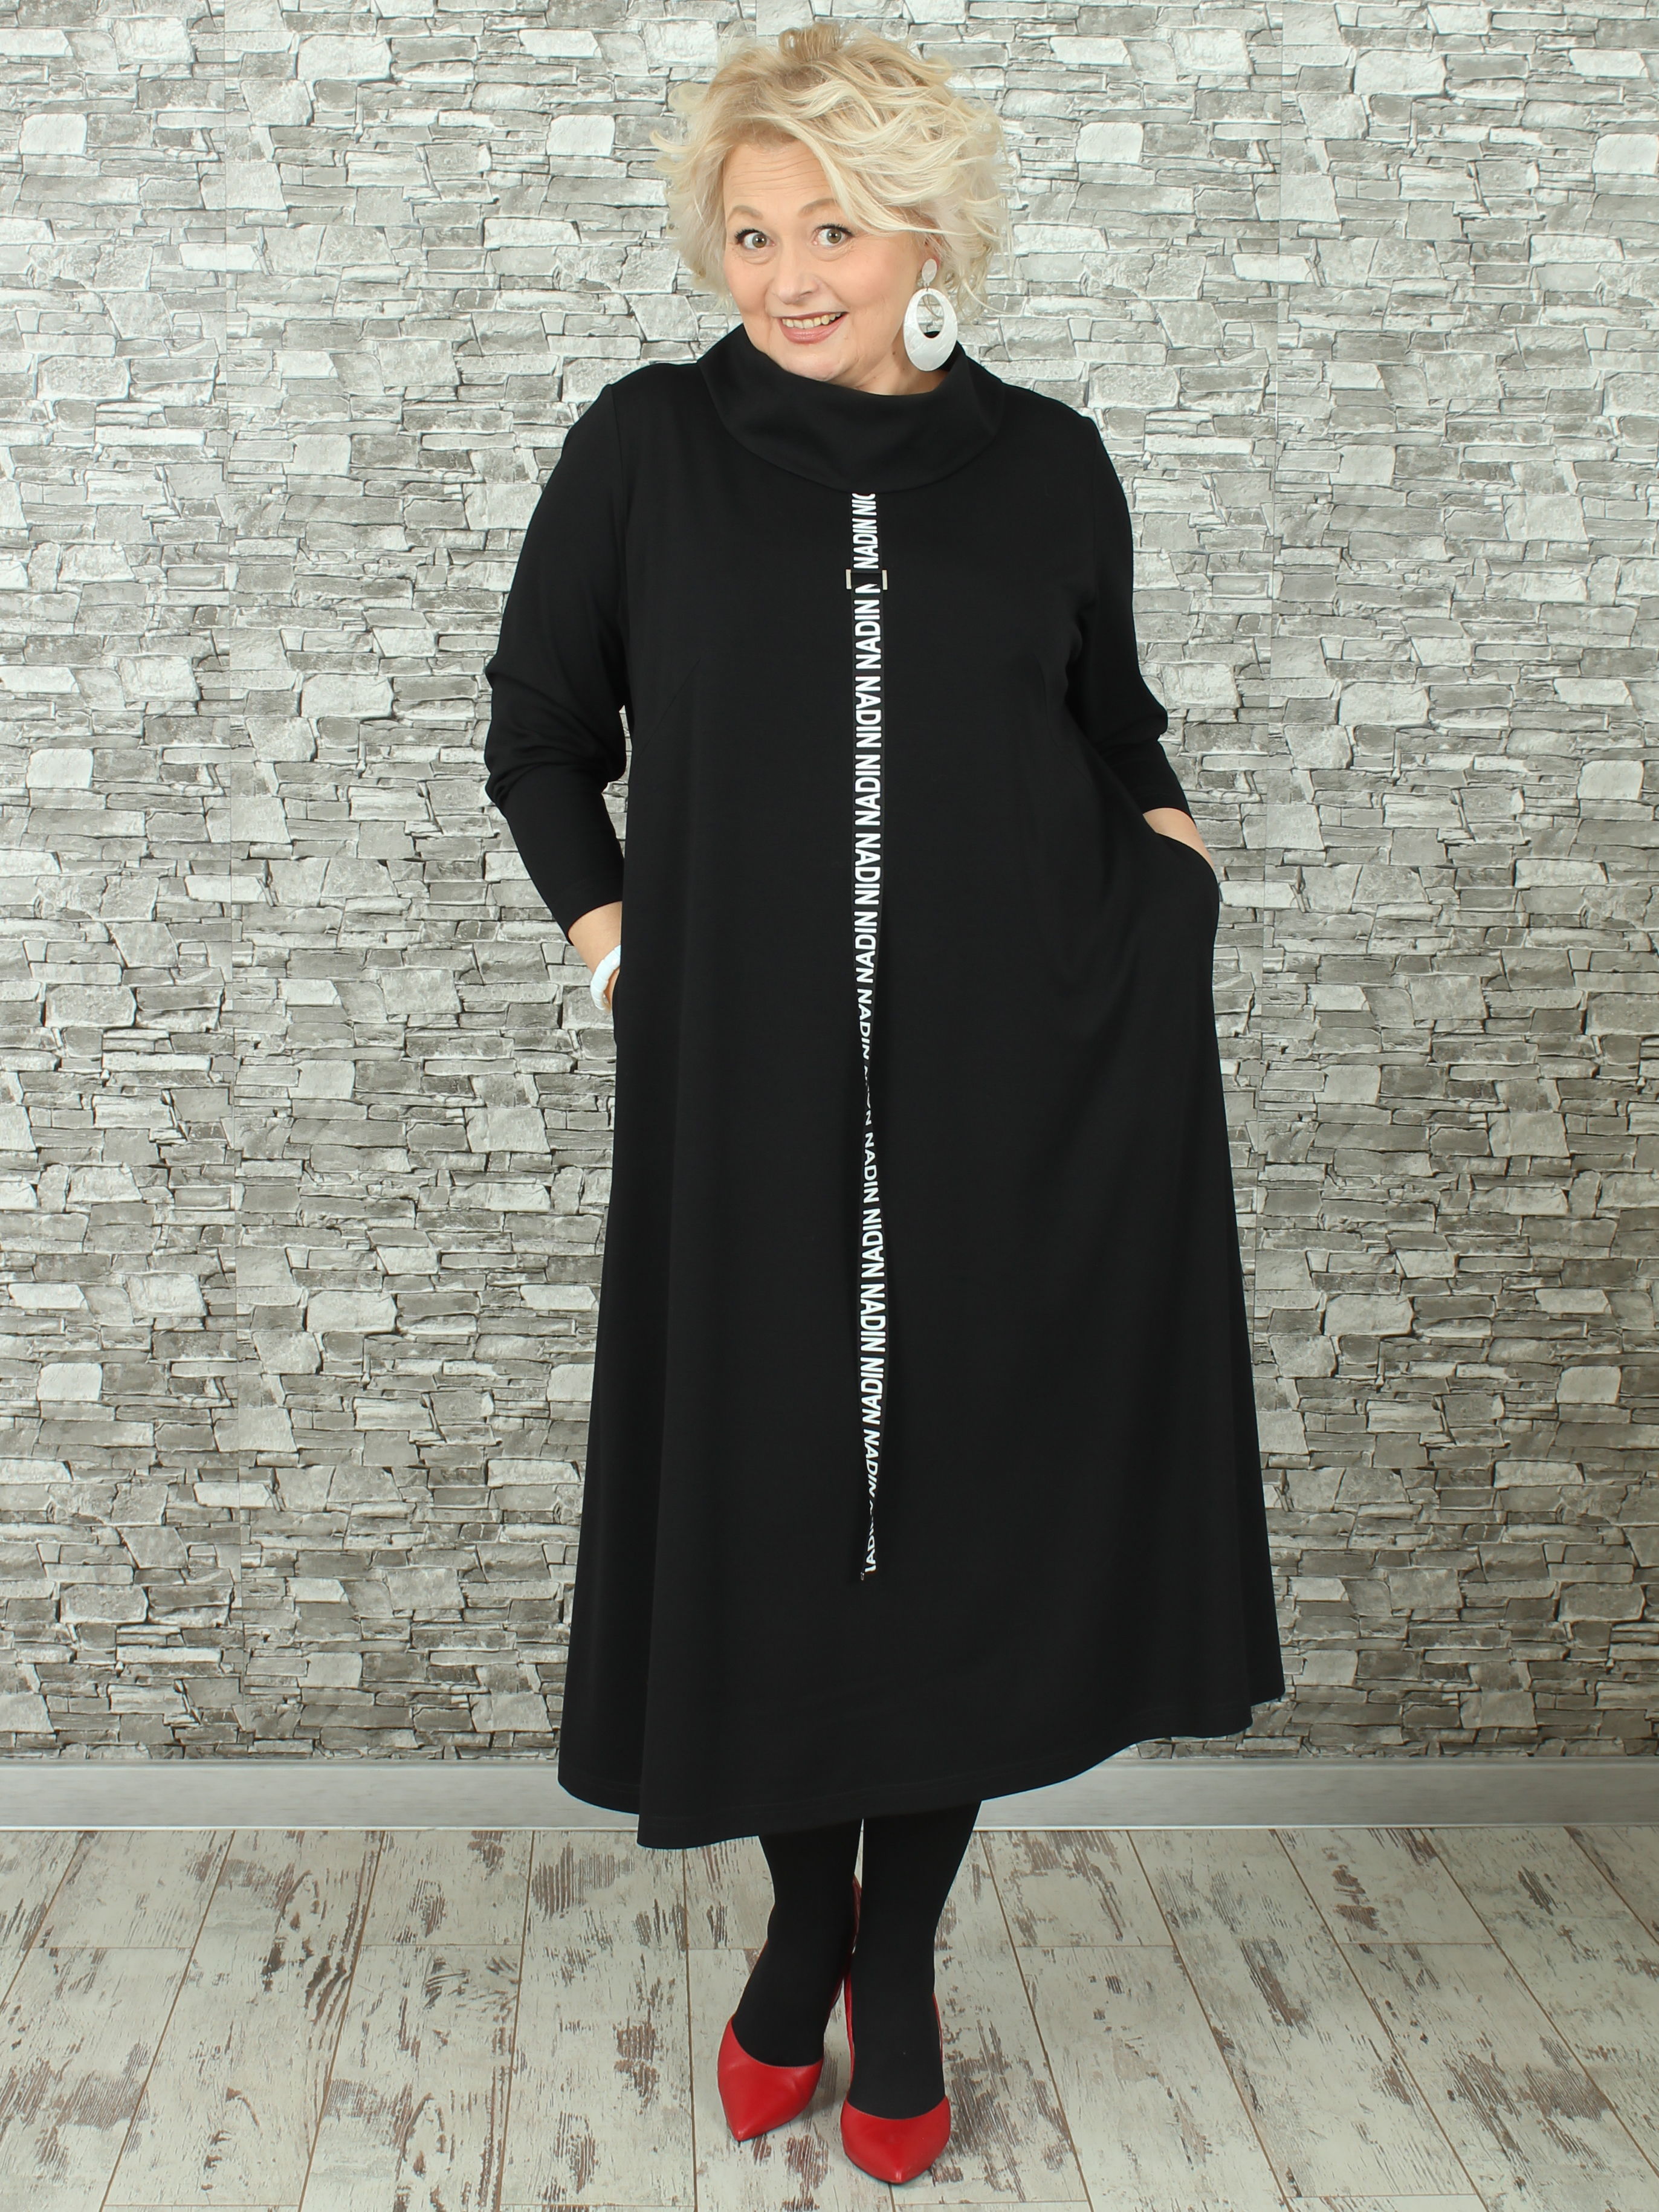 Женское платье NadiN 1676/1 56 размер Чёрное